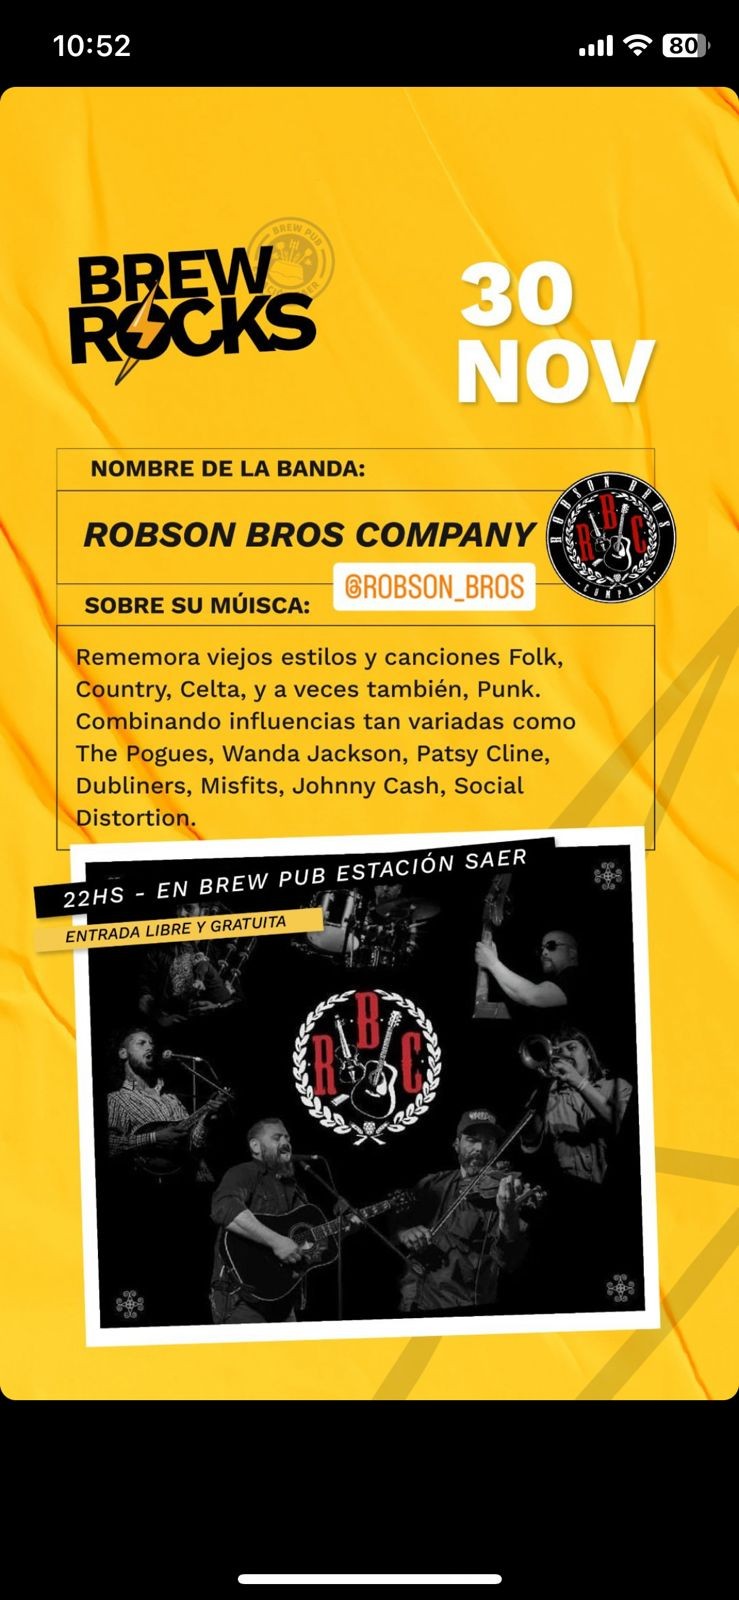 30/11 - Brew Rock presenta a Robson Bros Company